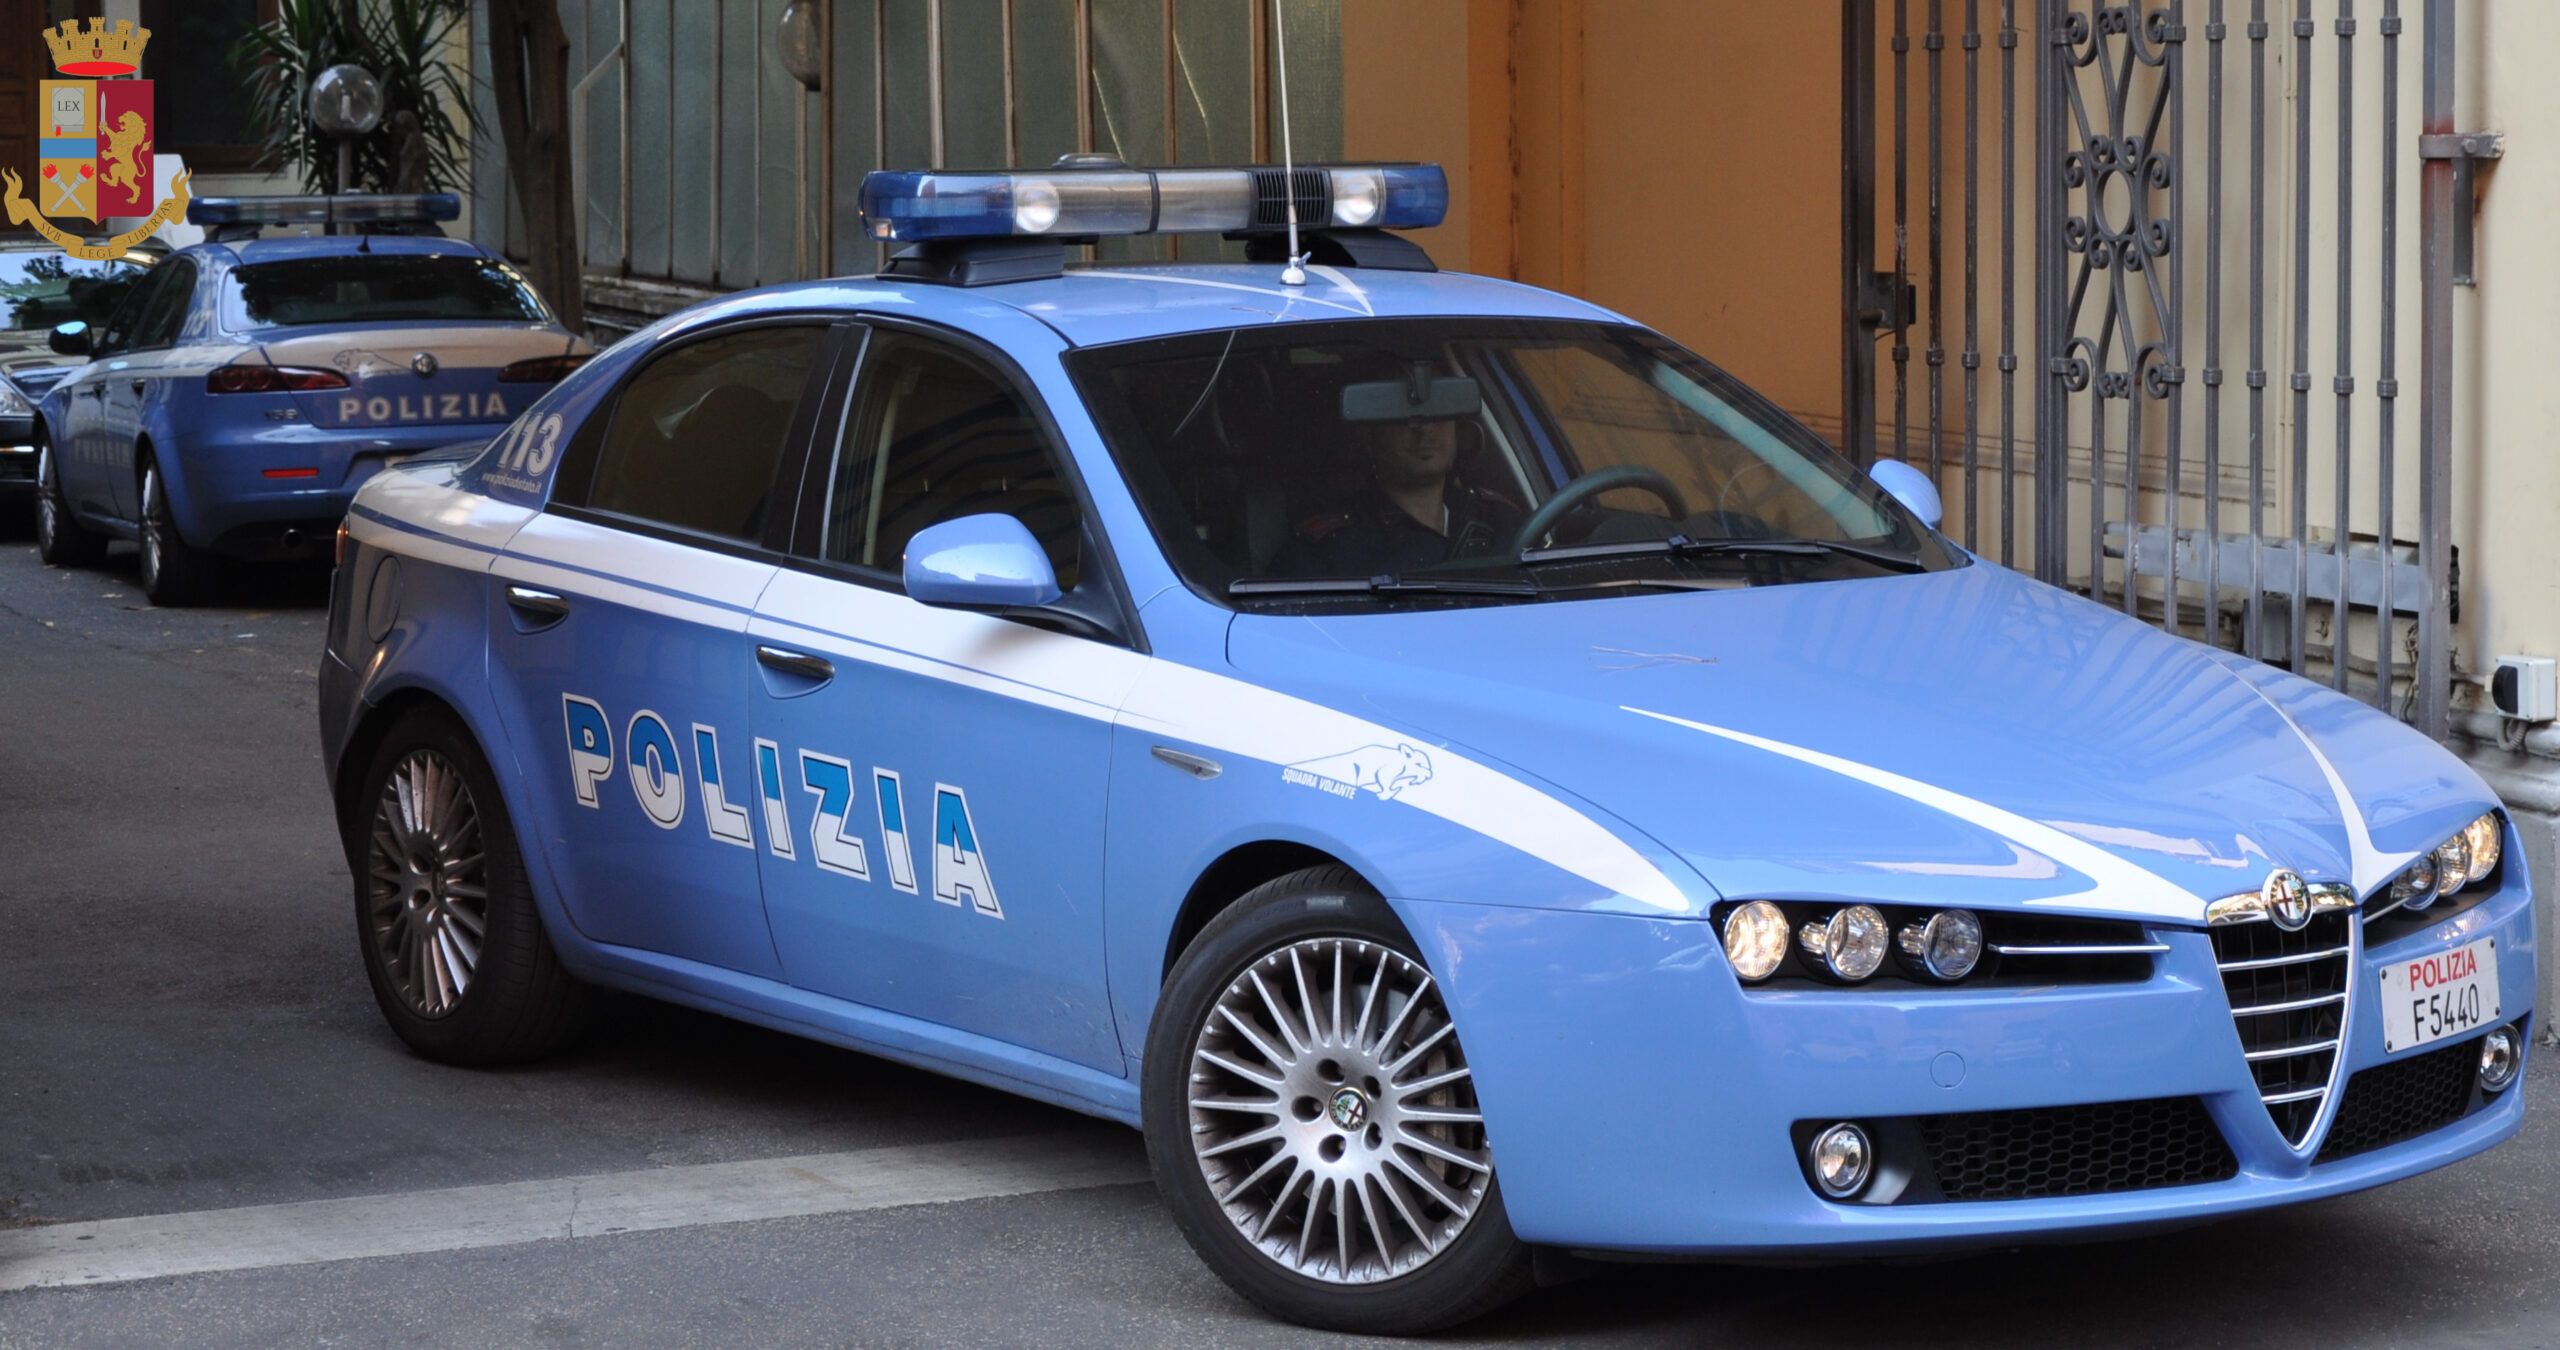 La volante della polizia a Latina